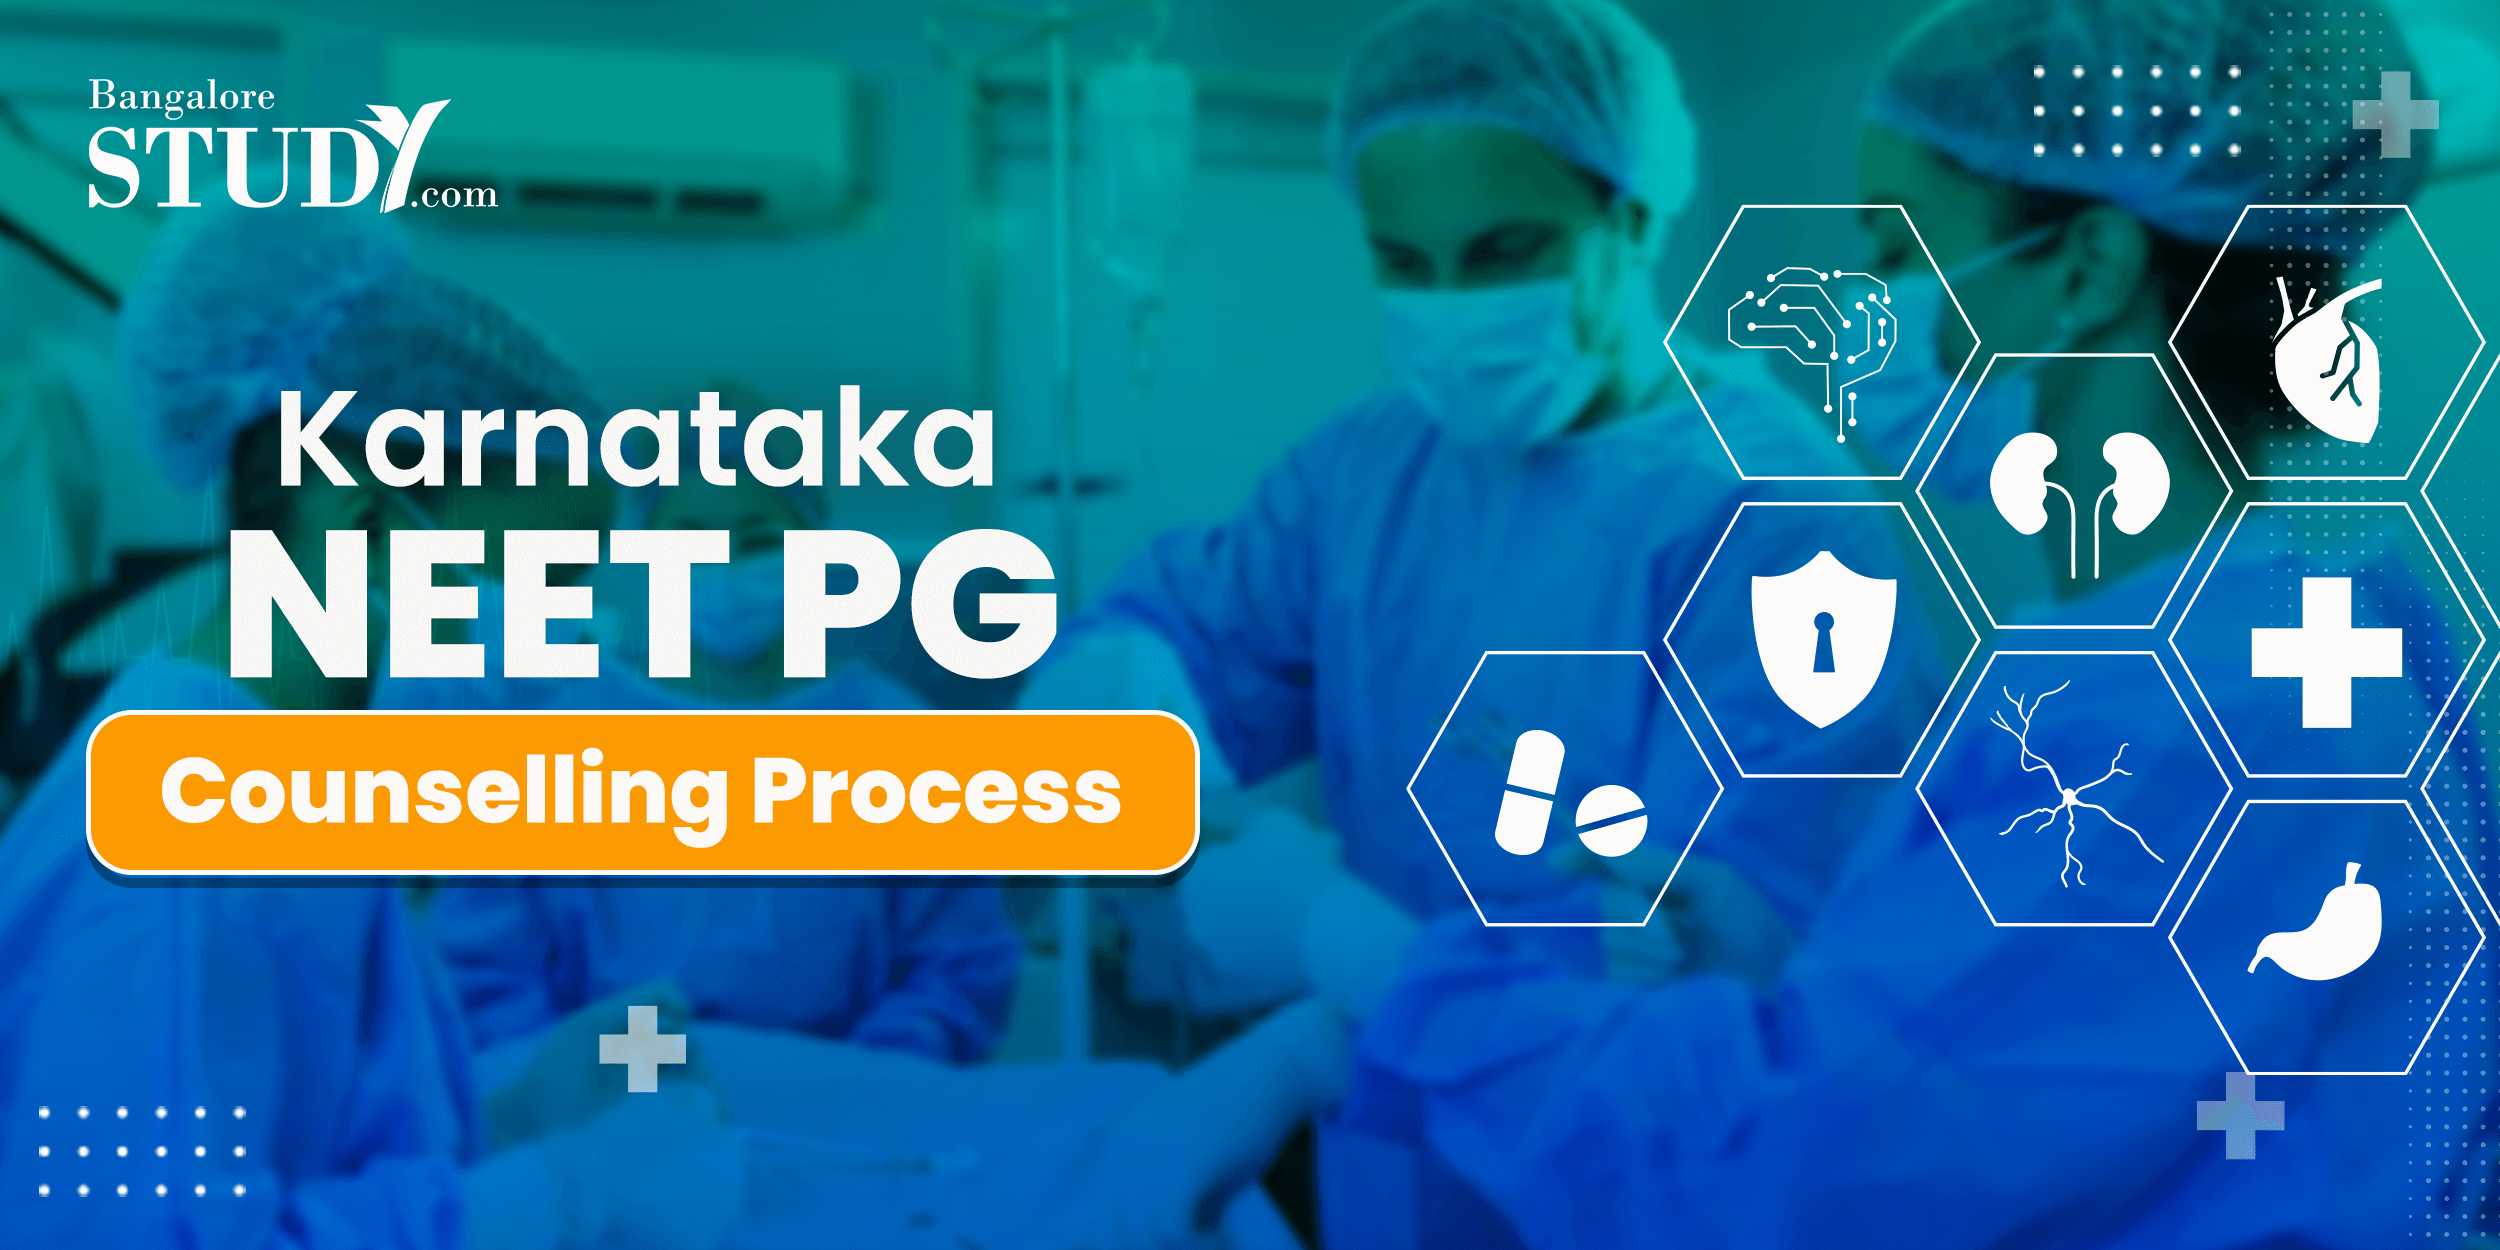 All About Karnataka NEET PG Counselling Process